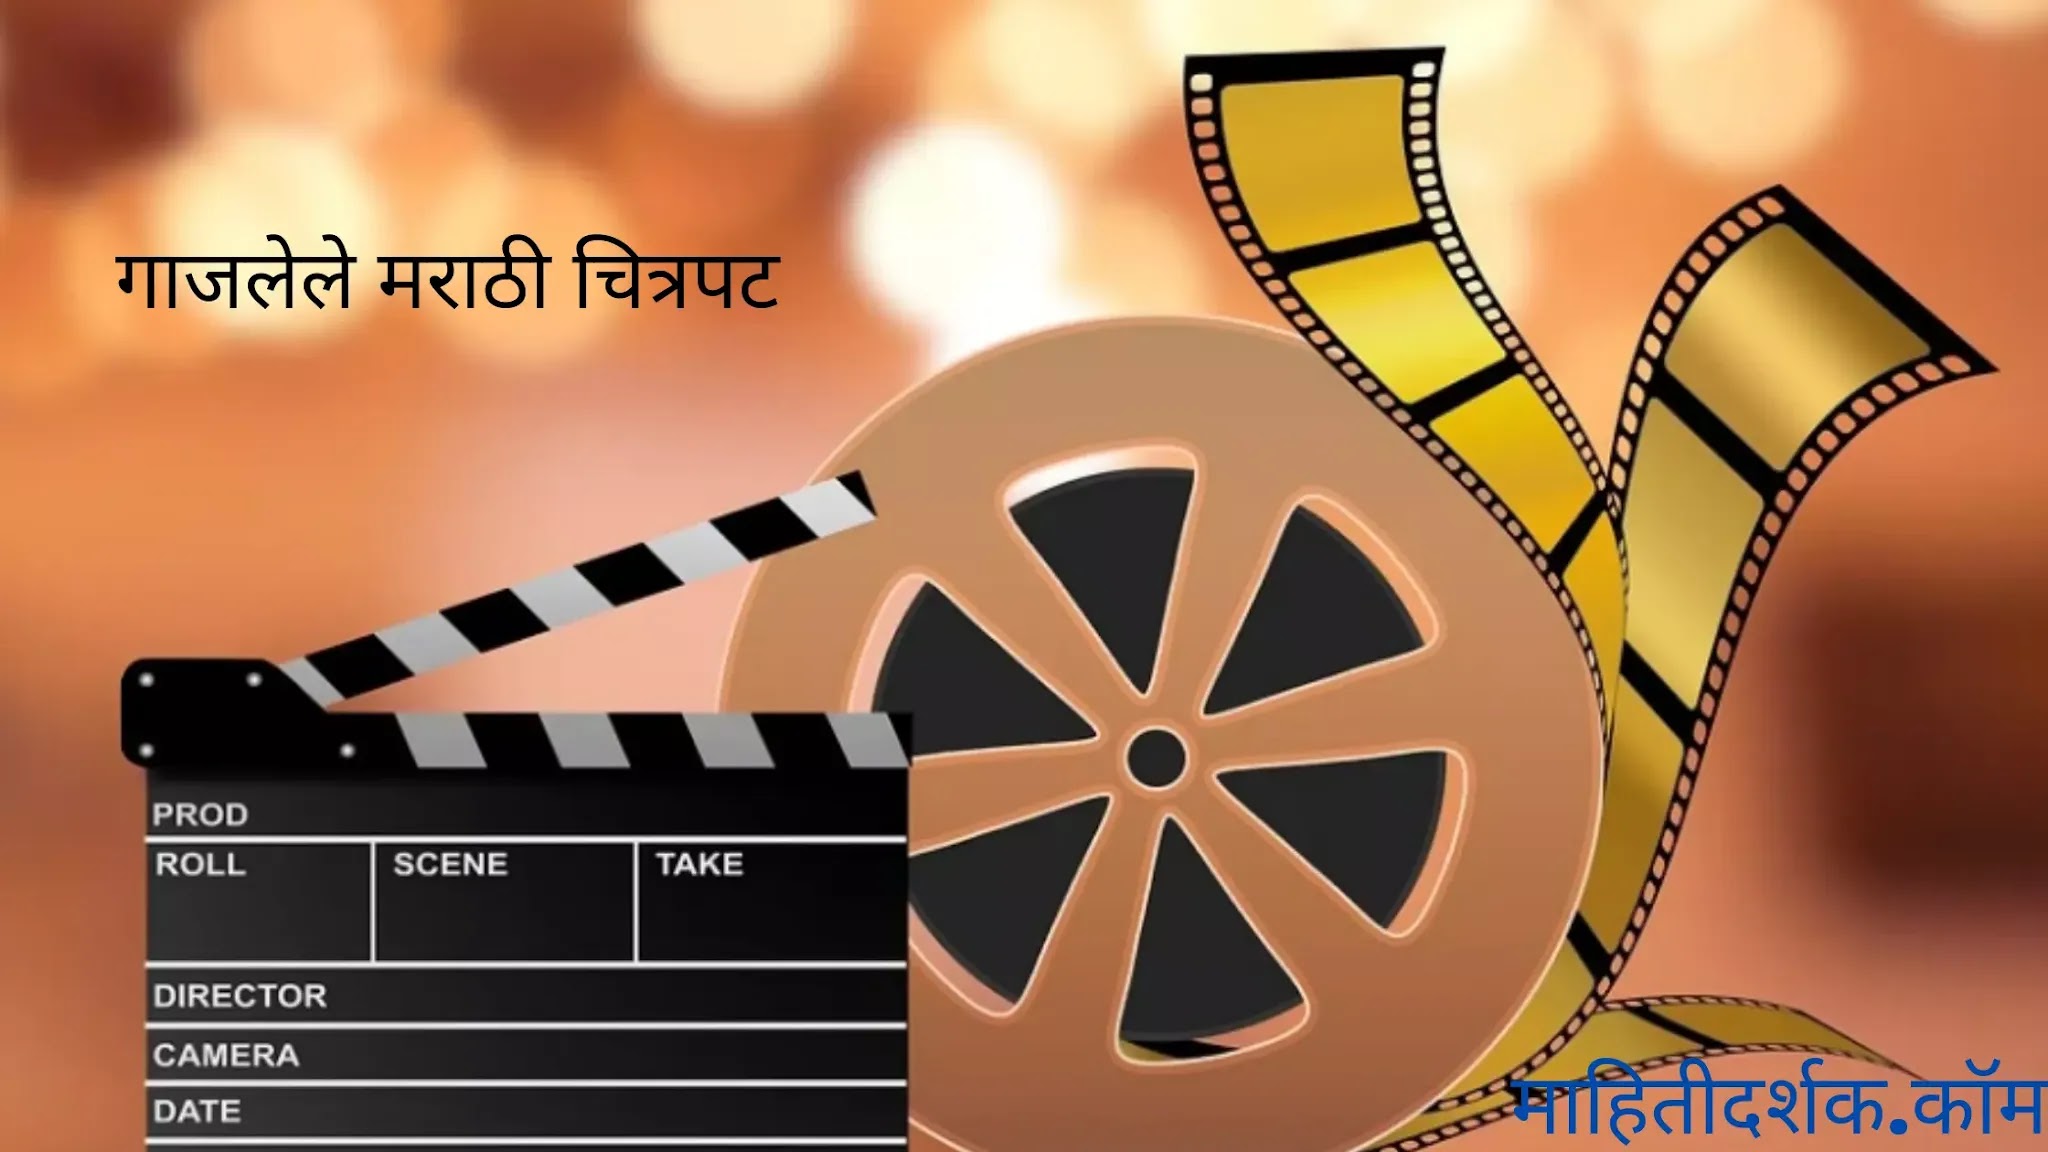 Famous Marathi movies in marathi